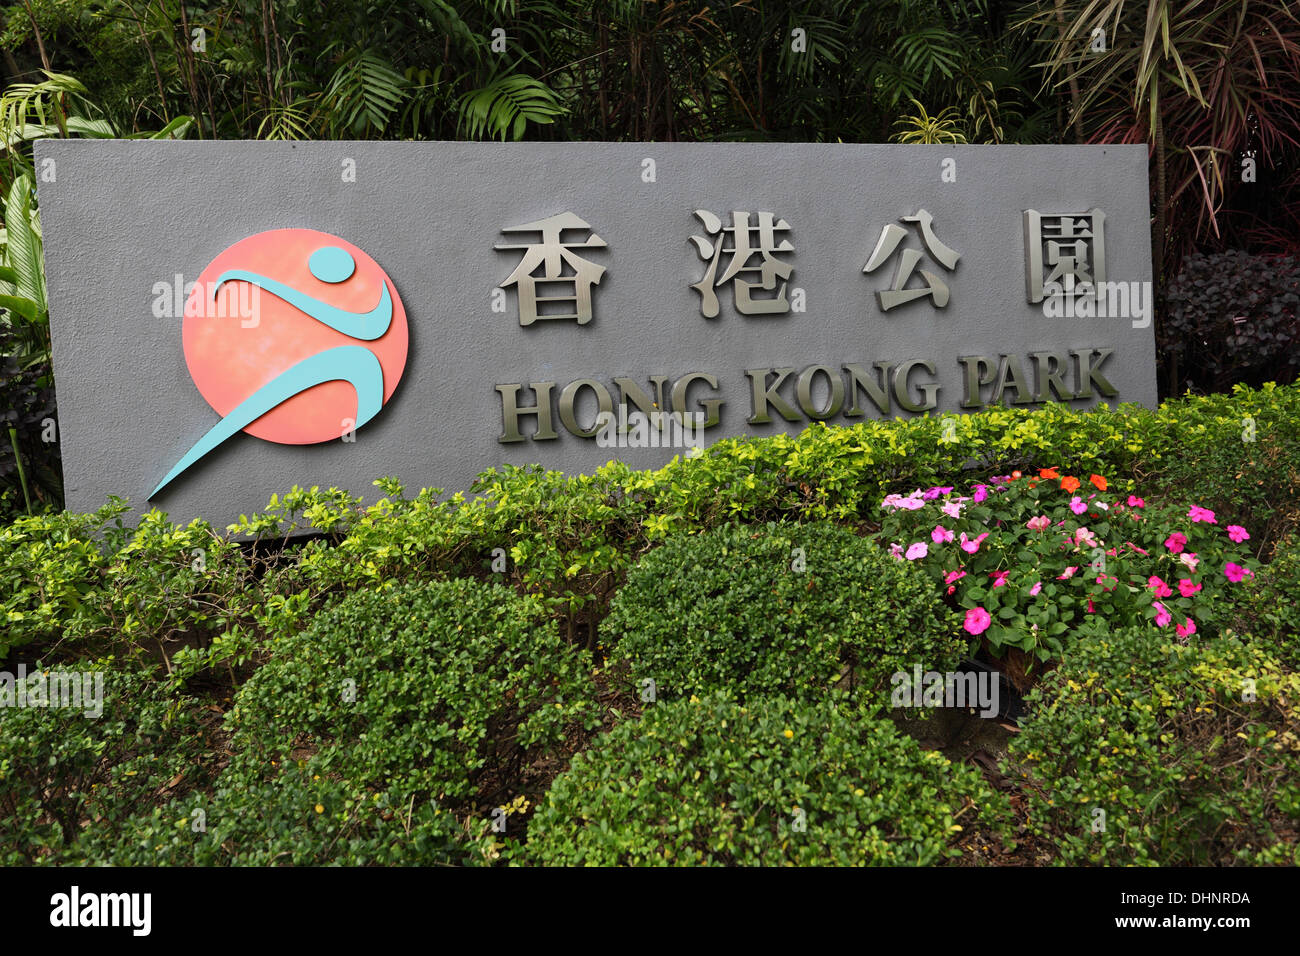 Hong Kong park entrance sign Stock Photo